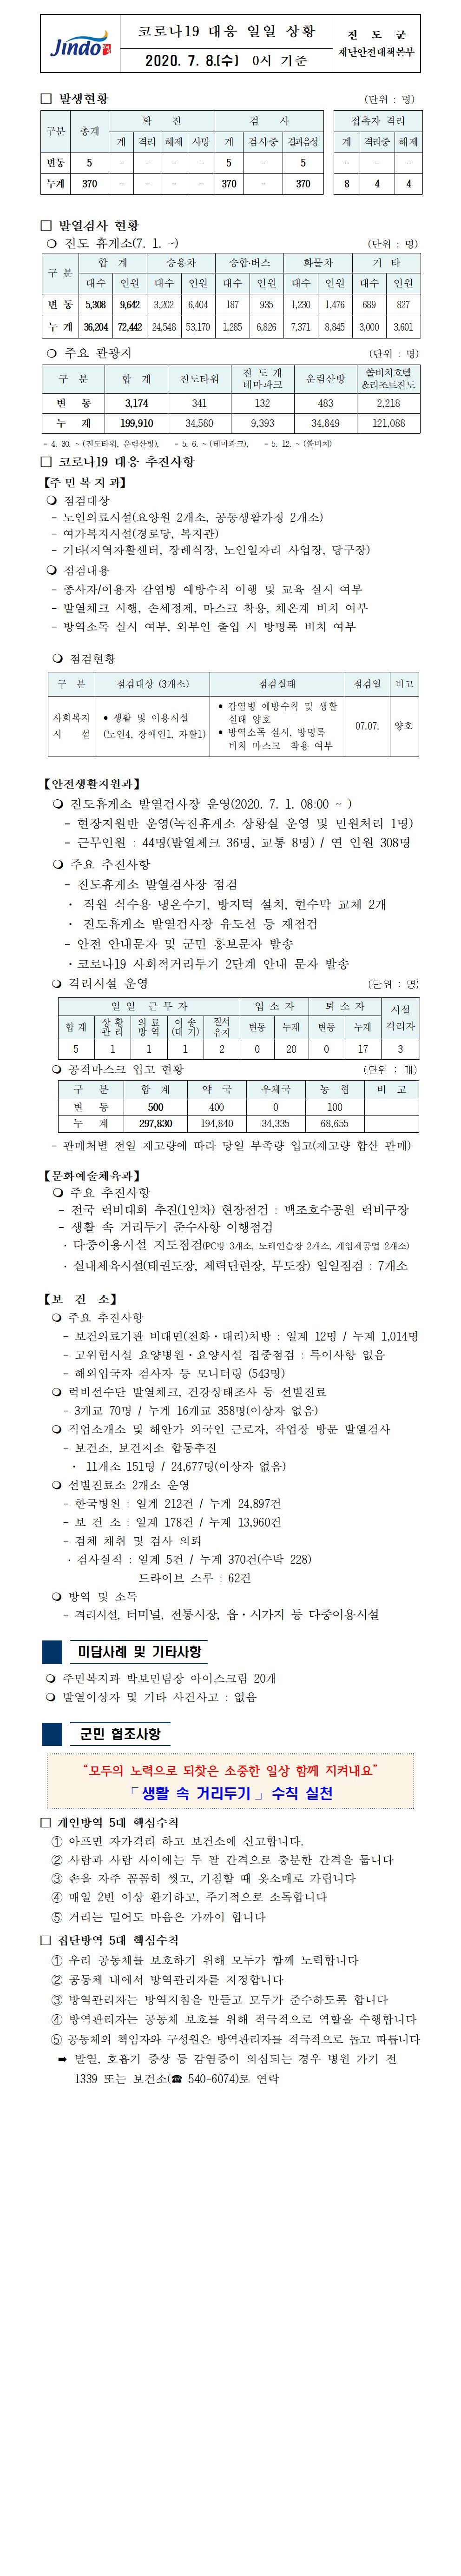 코로나19대응 일일 상황 보고(7월 8일 0시 기준) 첨부#1